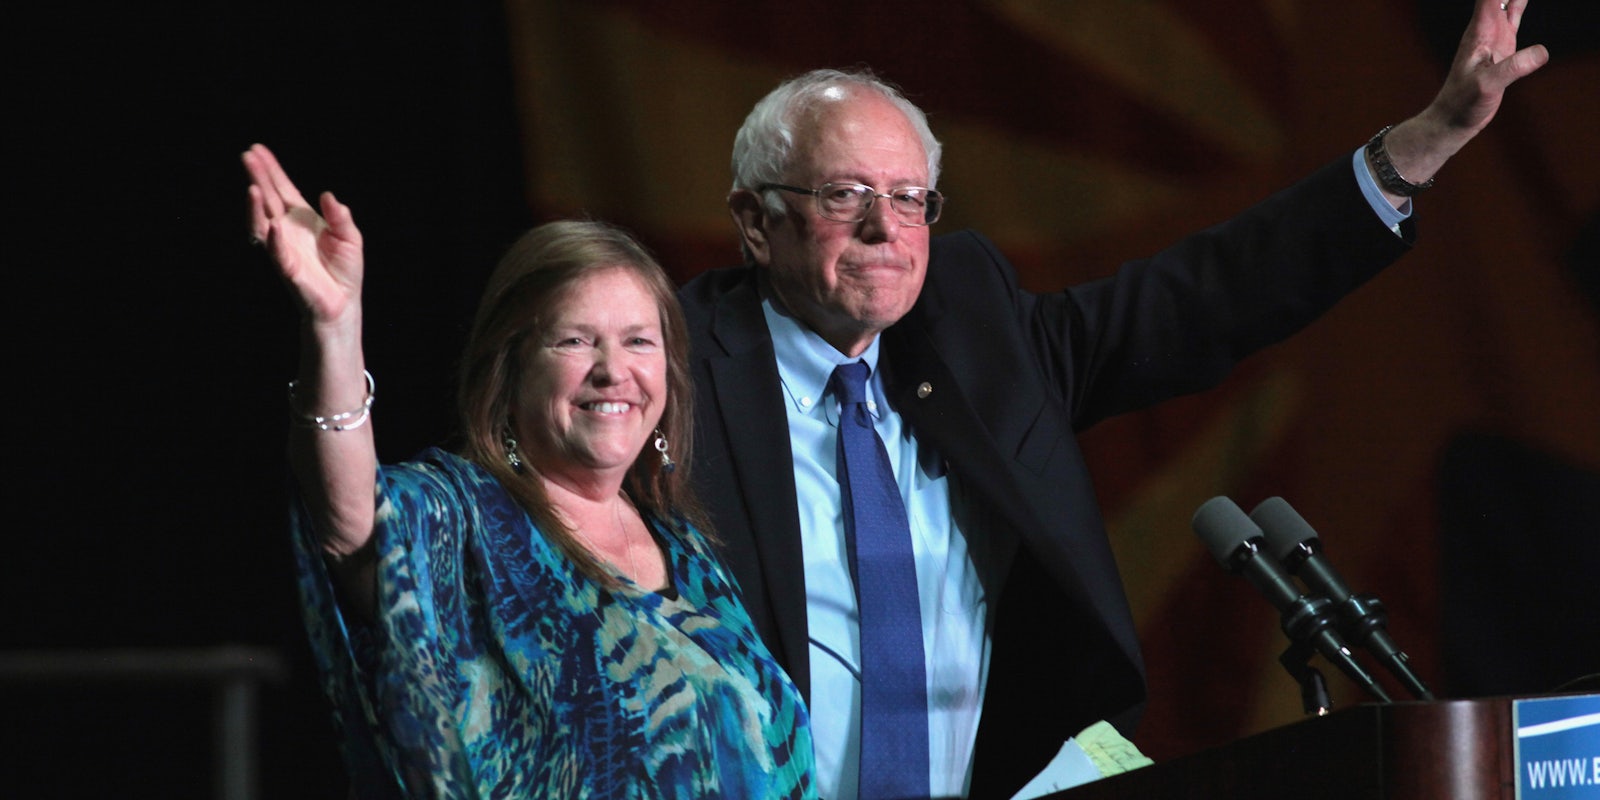 Bernie Sanders and Jane Sanders